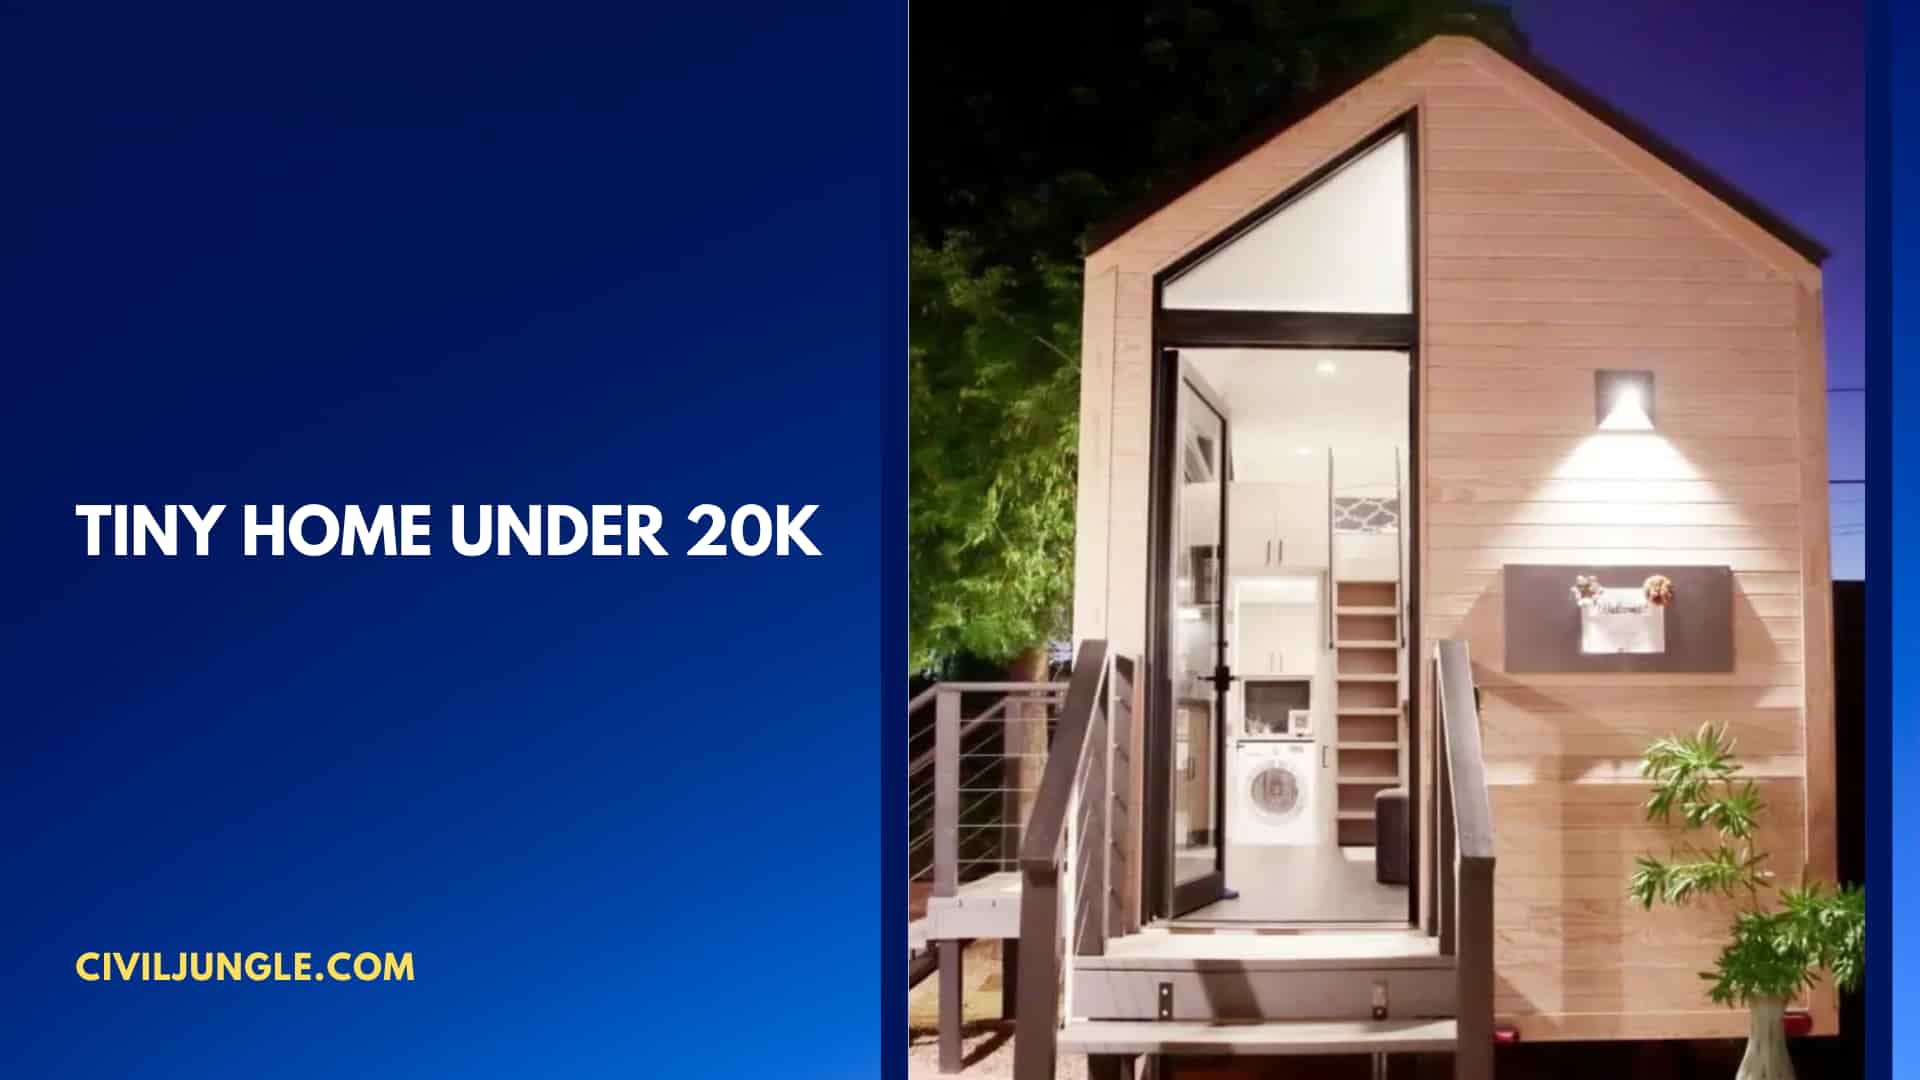 Tiny Home Under 20k